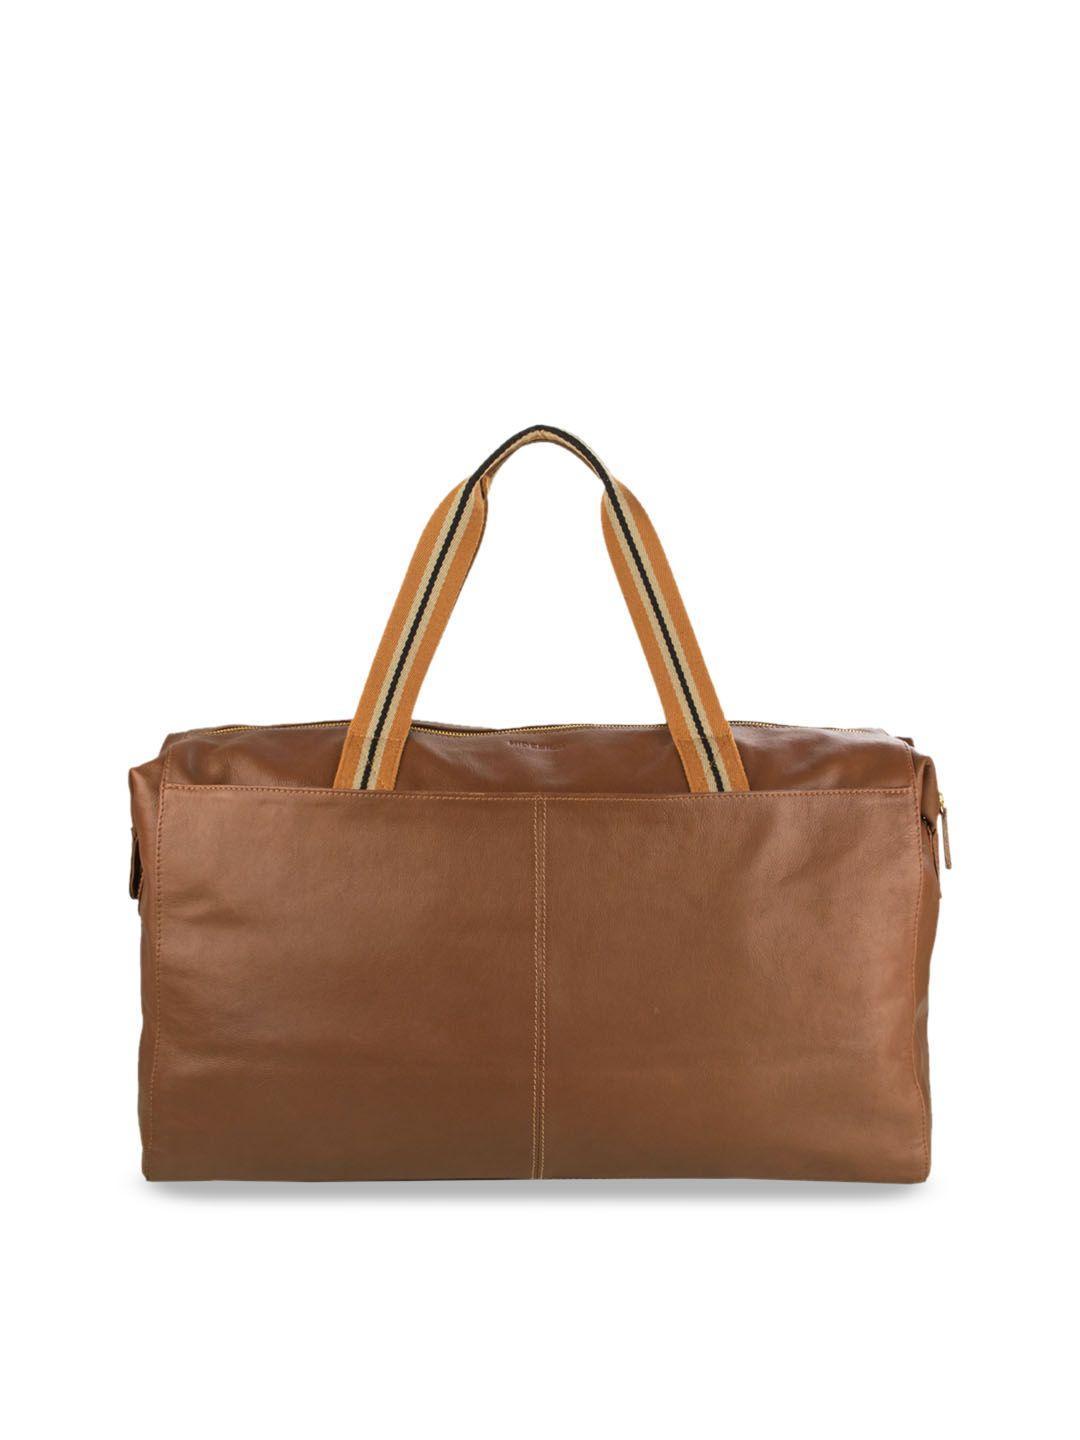 hidesign-men-tan-brown-solid-leather-duffel-bag